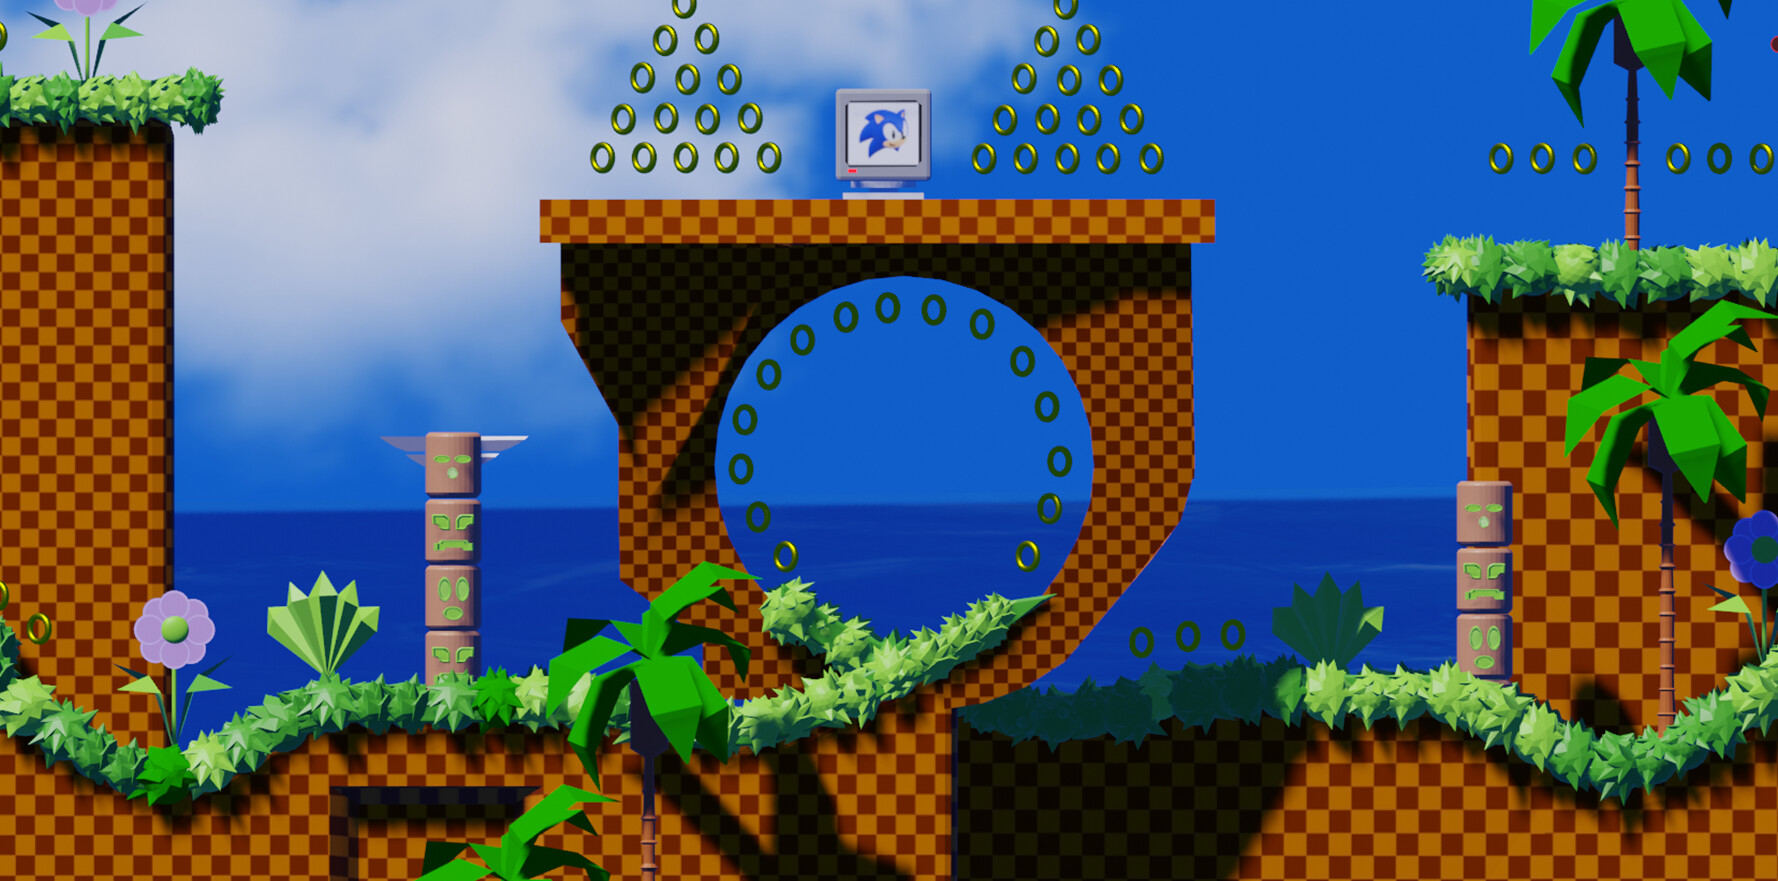 Sonic The Hedgehog: Hẳn ai trong chúng ta cũng từng biết đến chú nhím Sonic, một nhân vật huyền thoại của làng game thế giới. Hôm nay, bạn sẽ được chiêm ngưỡng hình ảnh đầy màu sắc và kỹ xảo tuyệt vời của Sonic trong các trò chơi mới nhất. Cùng thưởng thức và phát cuồng vì chú nhím đáng yêu này nhé!